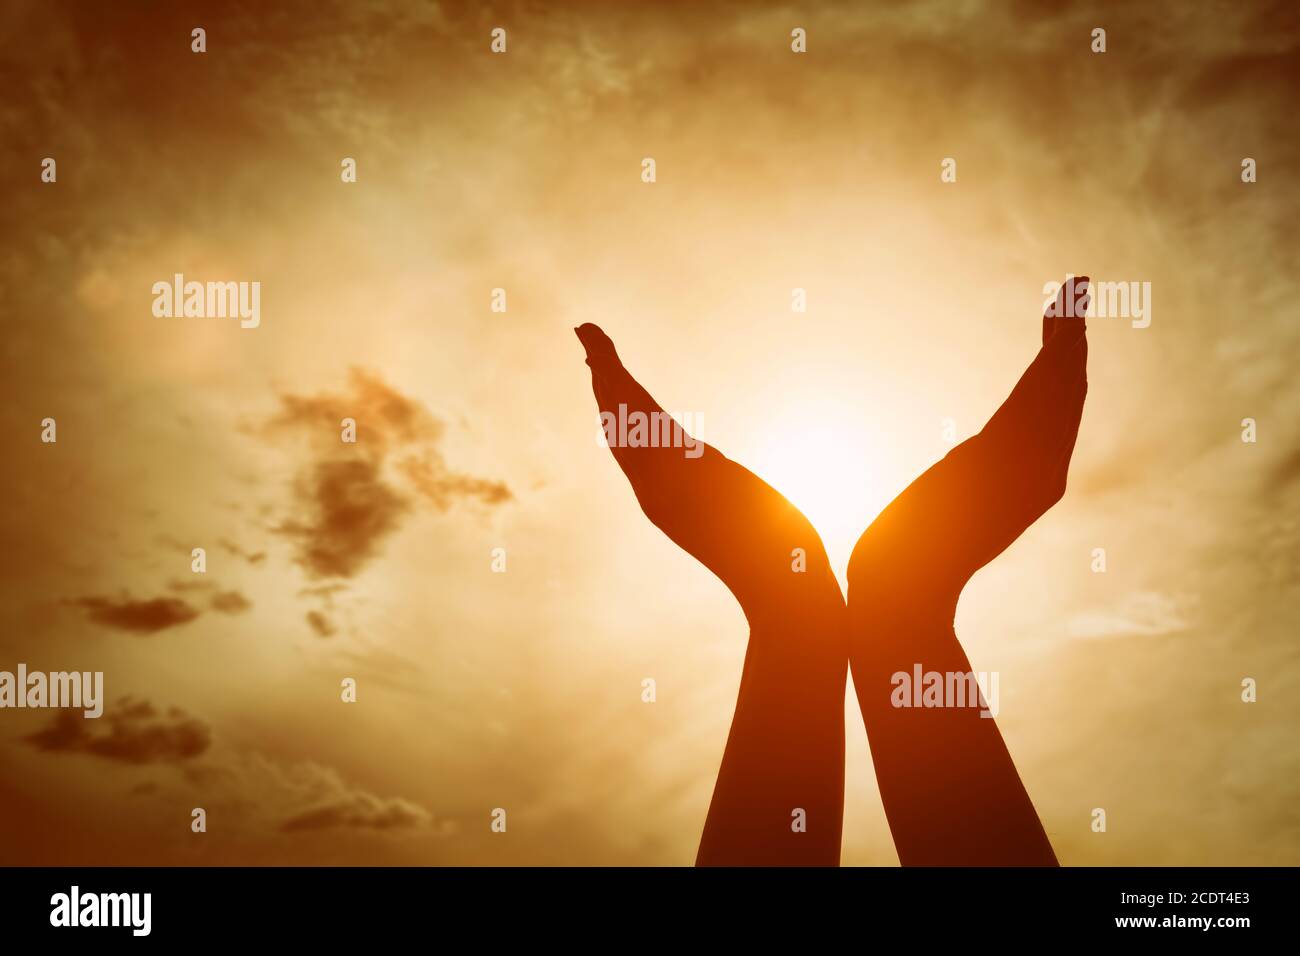 Mains levées prenant le soleil sur le ciel de coucher de soleil. Concept de spiritualité, de bien-être, d'énergie positive Banque D'Images